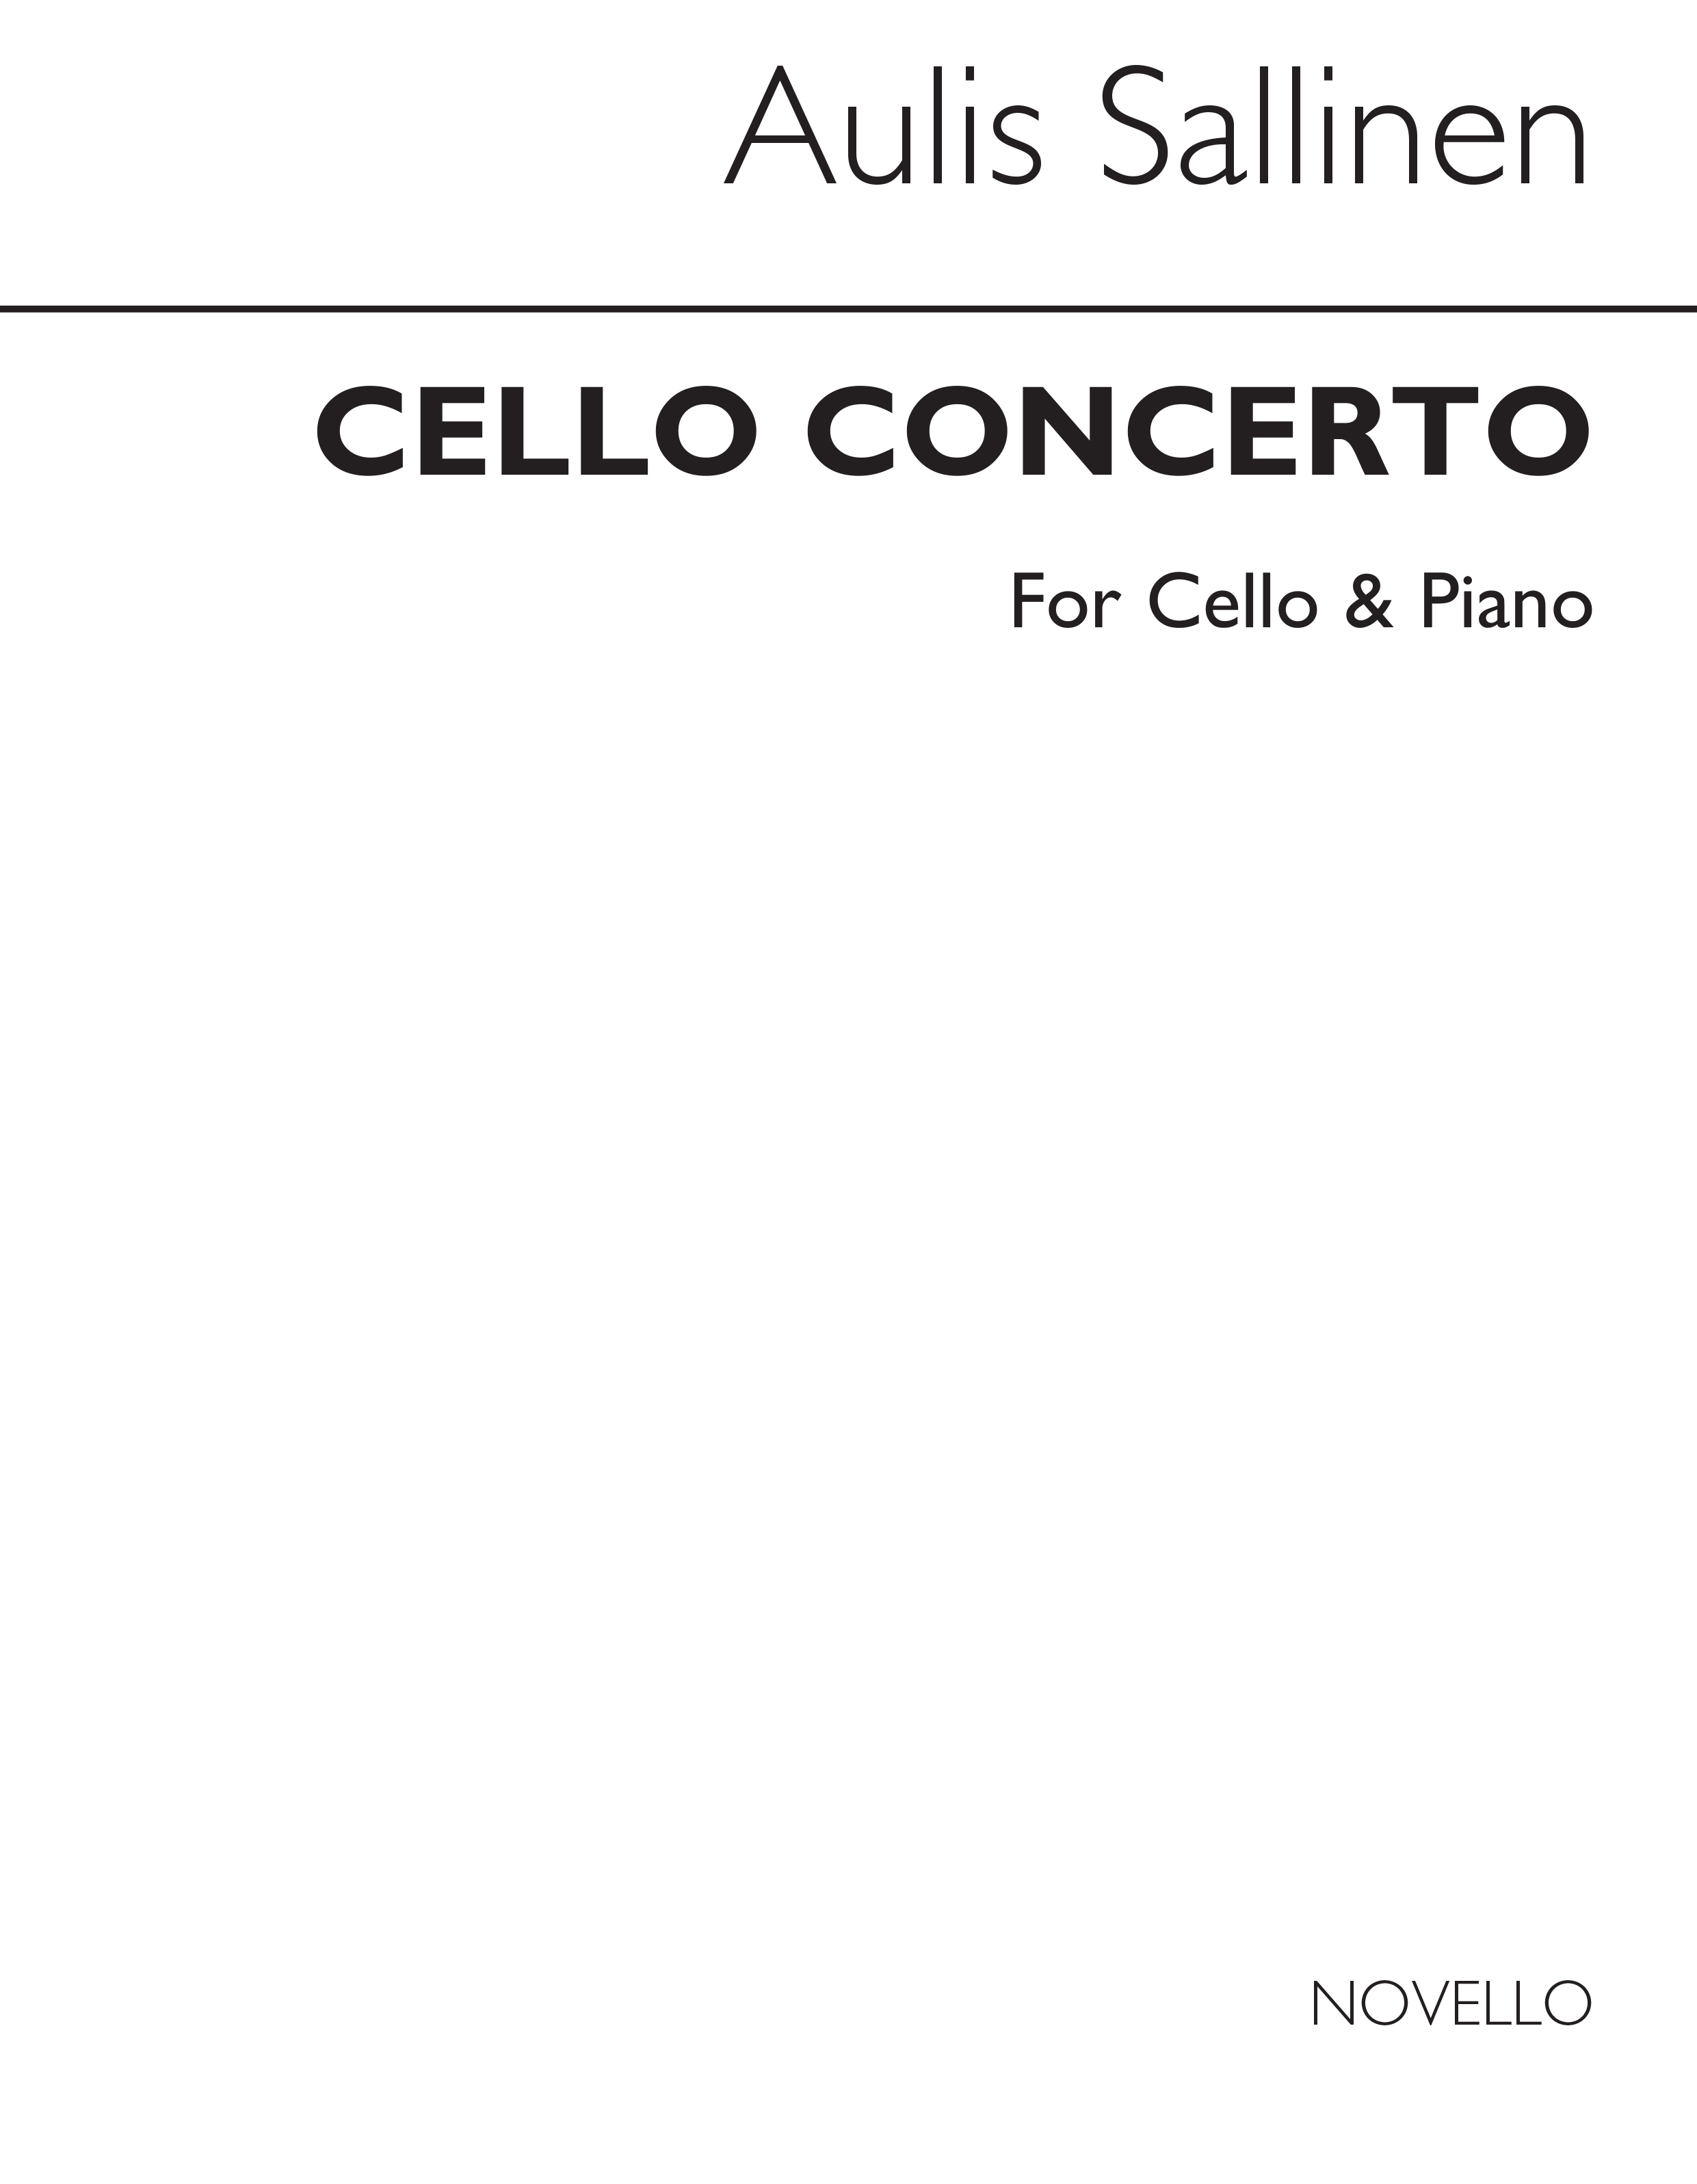 Aulis Sallinen: Concerto For Cello